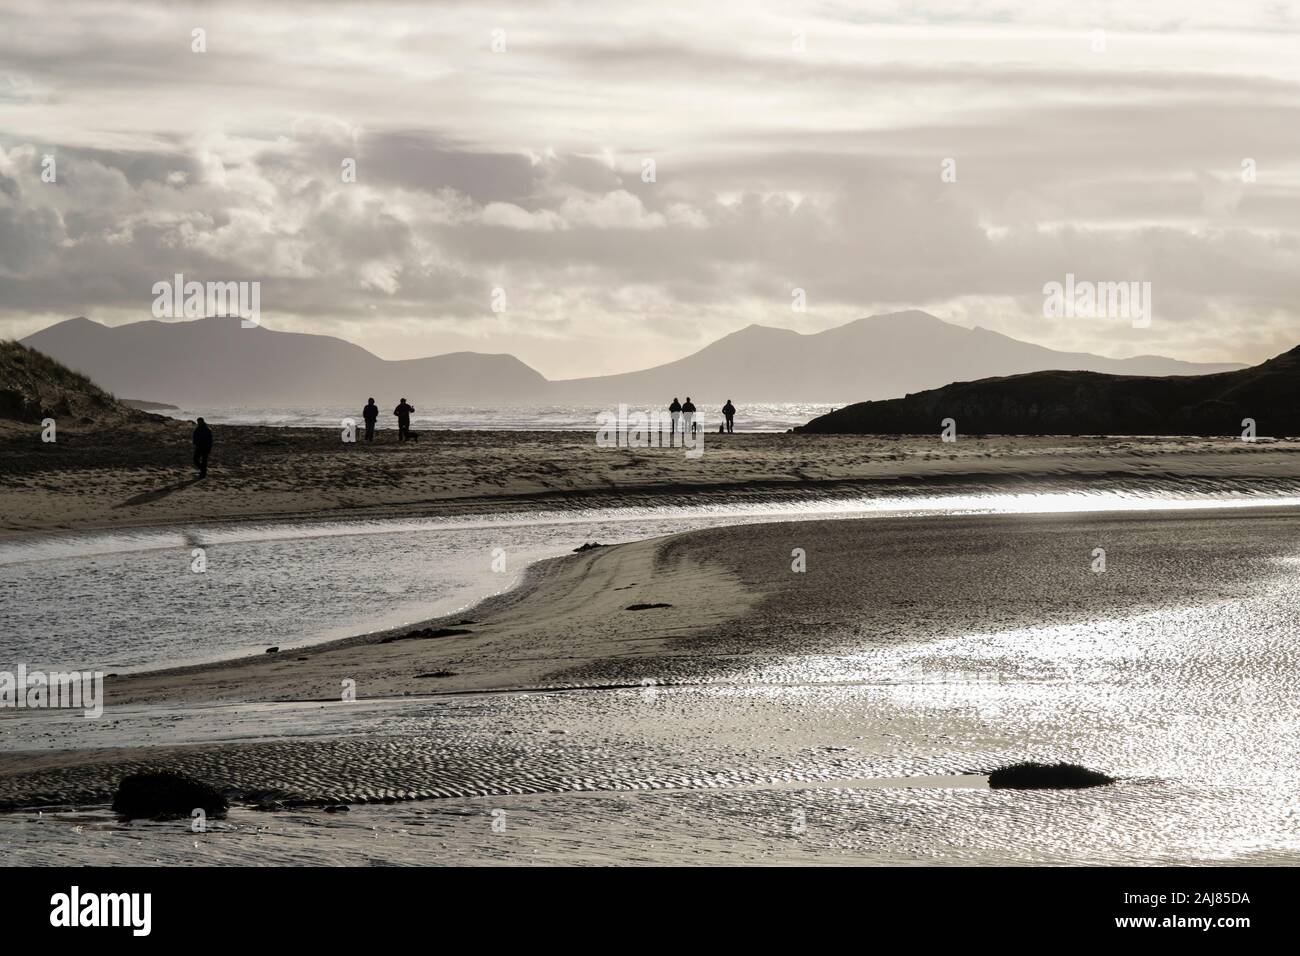 Vue en contre-jour d'Afon Ffraw avec river people walking on Traeth Mawr beach avec des montagnes au-delà en hiver. Aberffraw Isle of Anglesey Pays de Galles UK Banque D'Images